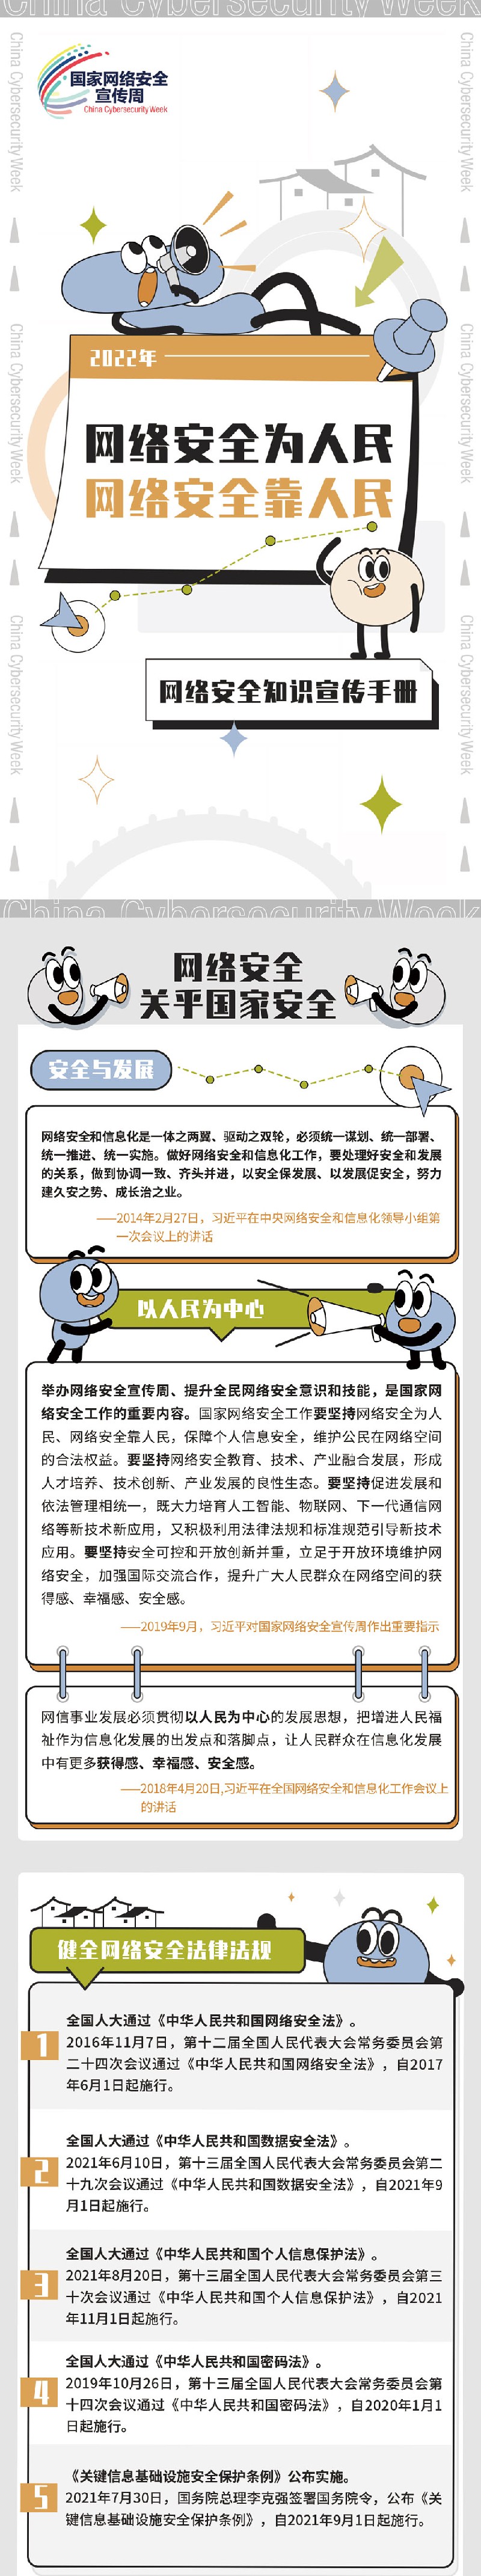 石家庄网络安全知识宣传手册插图